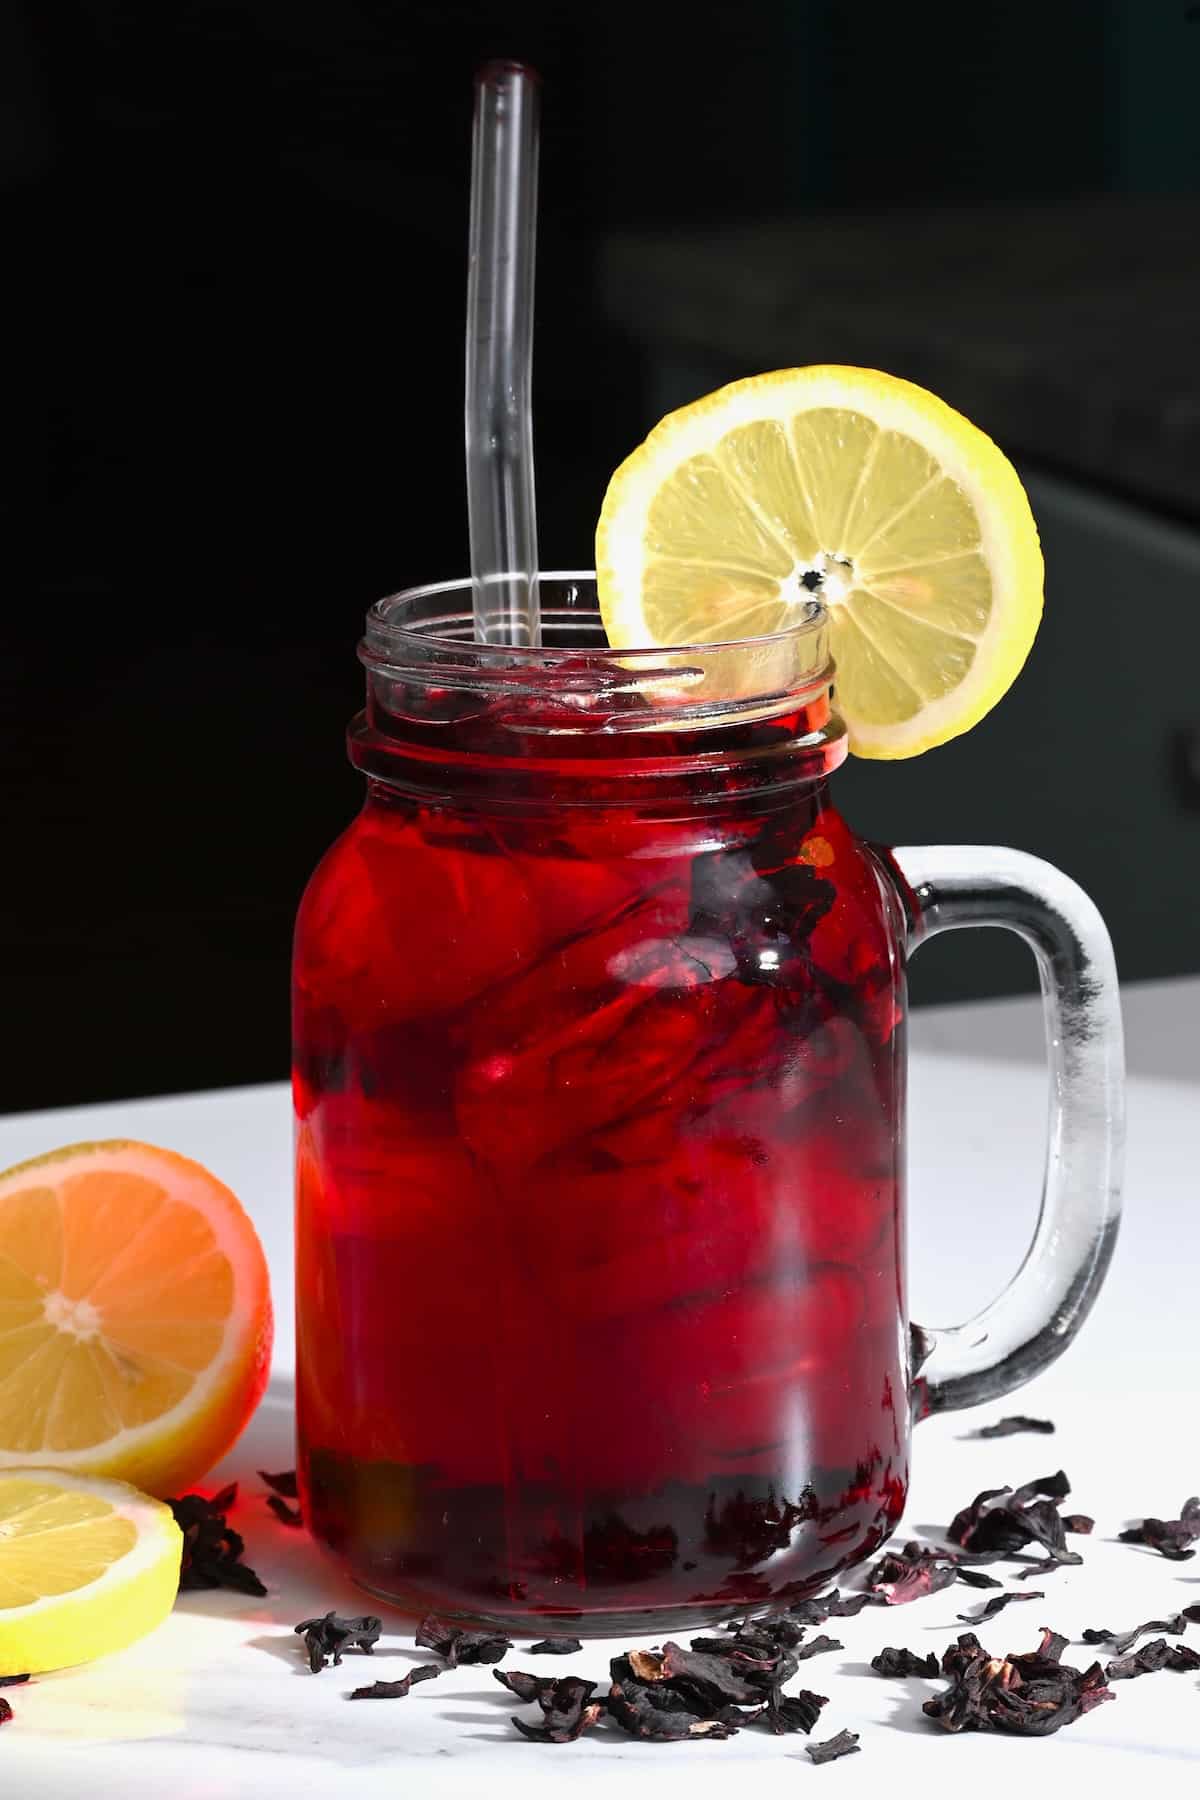 A mason jar with red tea and a lemon slice